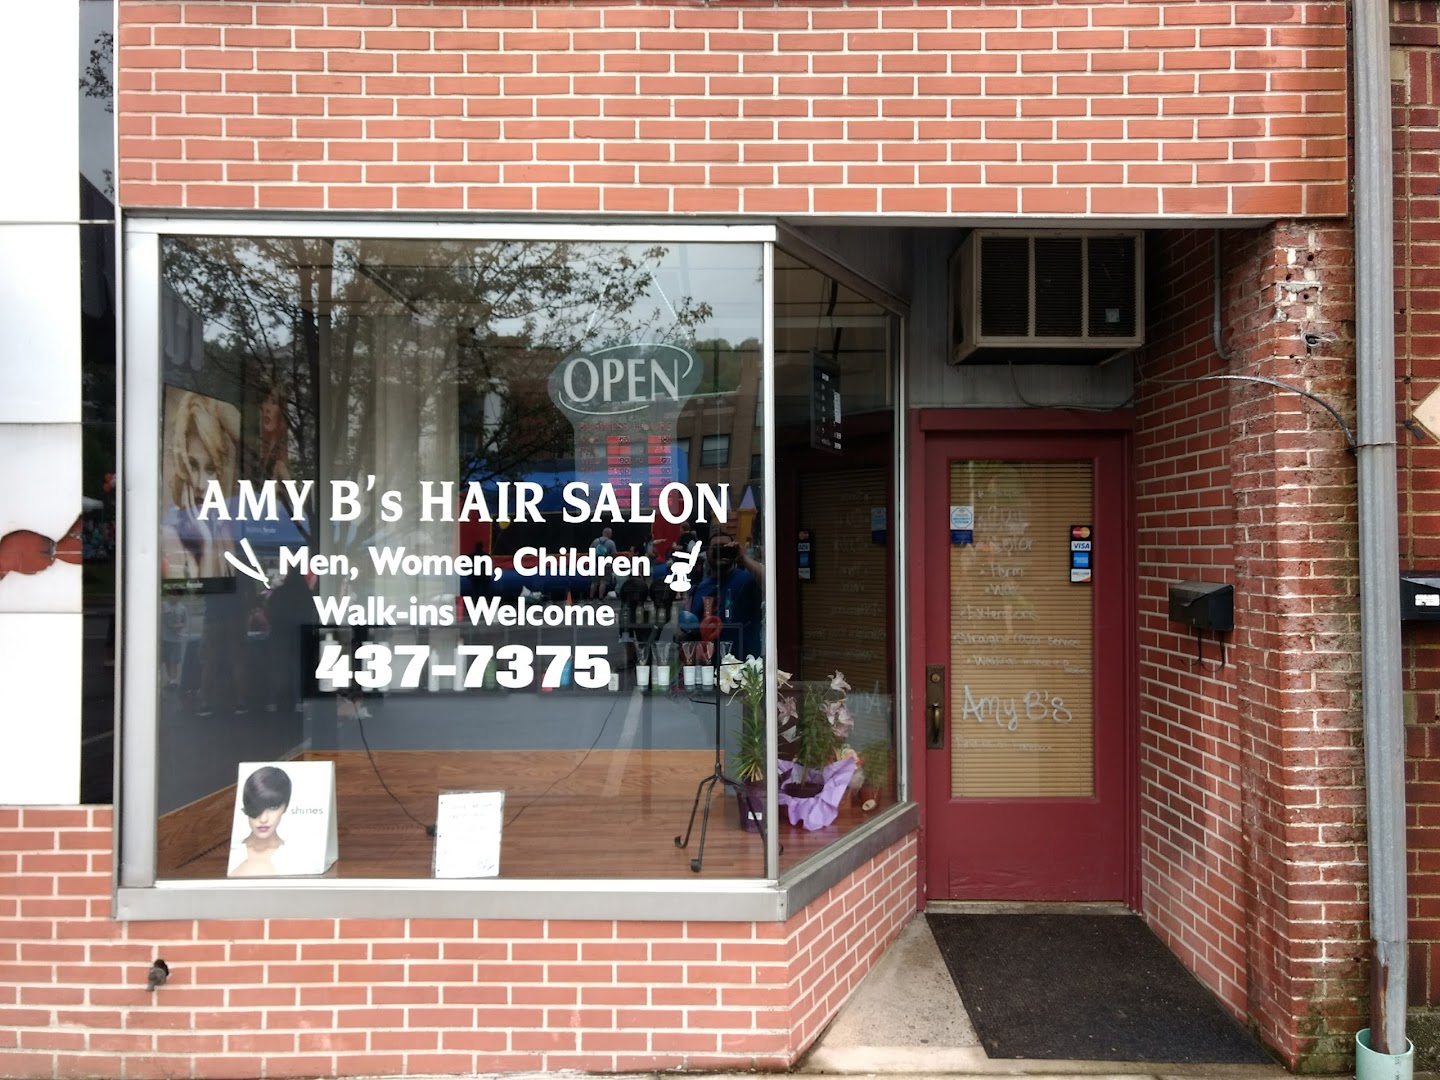 Amy B's Hair Salon